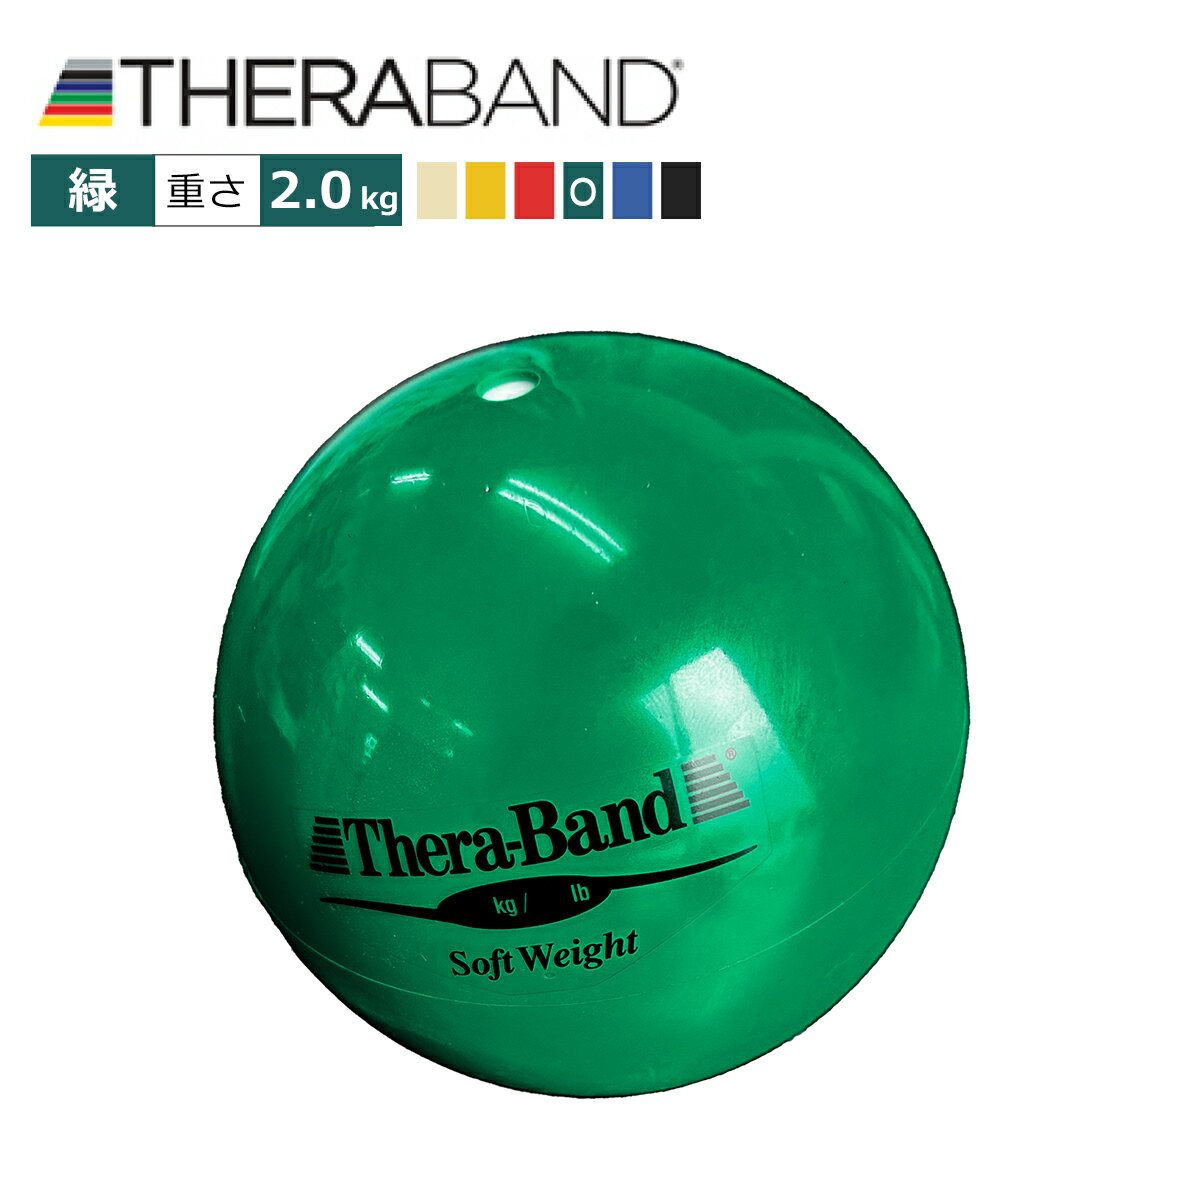 緑色 セラバンド Theraband ソフトウエイトボール グリーン 重さ：2.0Kg 直径11cm エクササイズ 筋トレ リハビリ トレーニング グッズ アイテム 送料無料 公式 正規品 高齢者 ストレッチ 器具 …